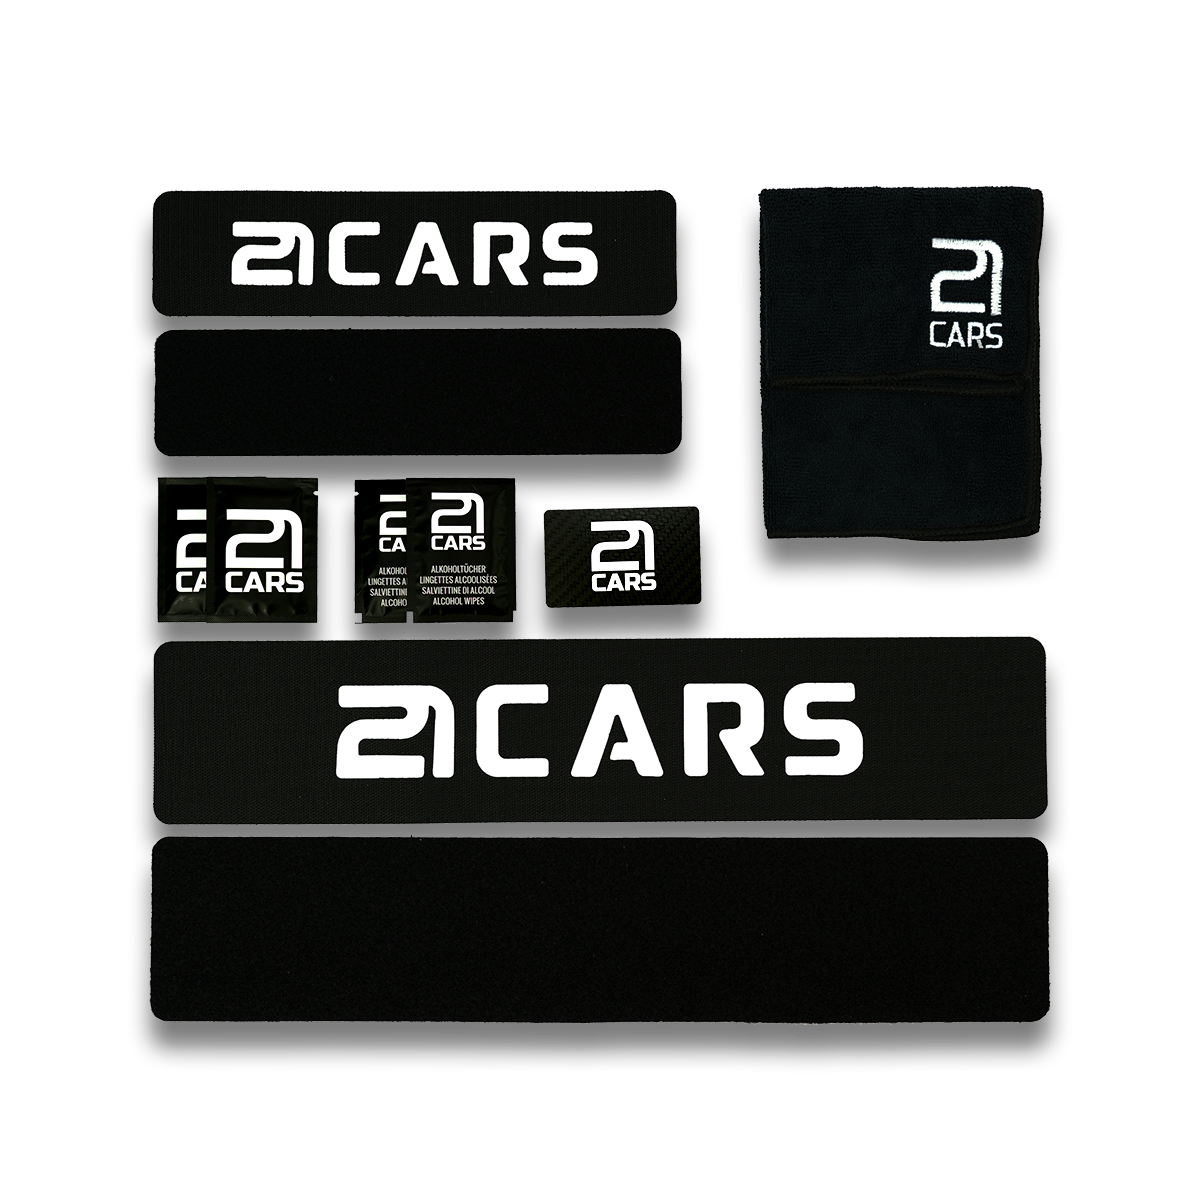 21CARS Klett Wechselschild Nummernschild Kennzeichenhalter | Rahmenlos